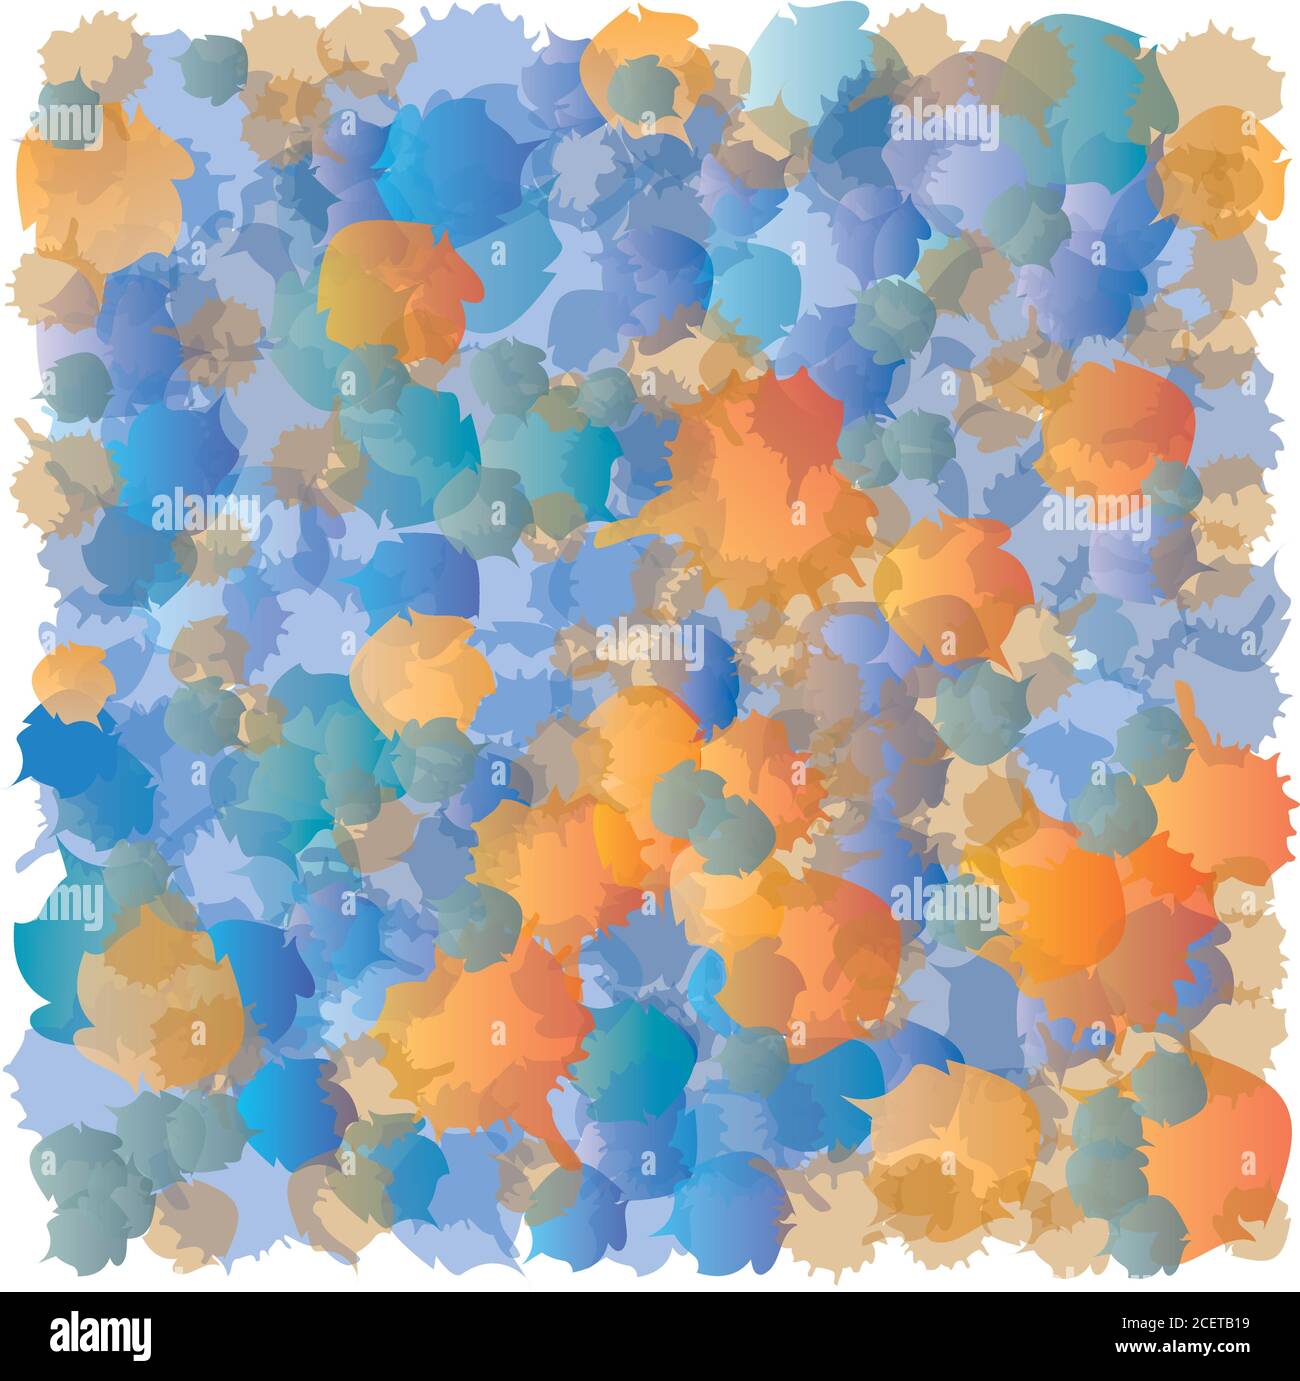 Abstrakte Punkte Muster - Blau und Orange Farben - Akkumulation Stock Vektor